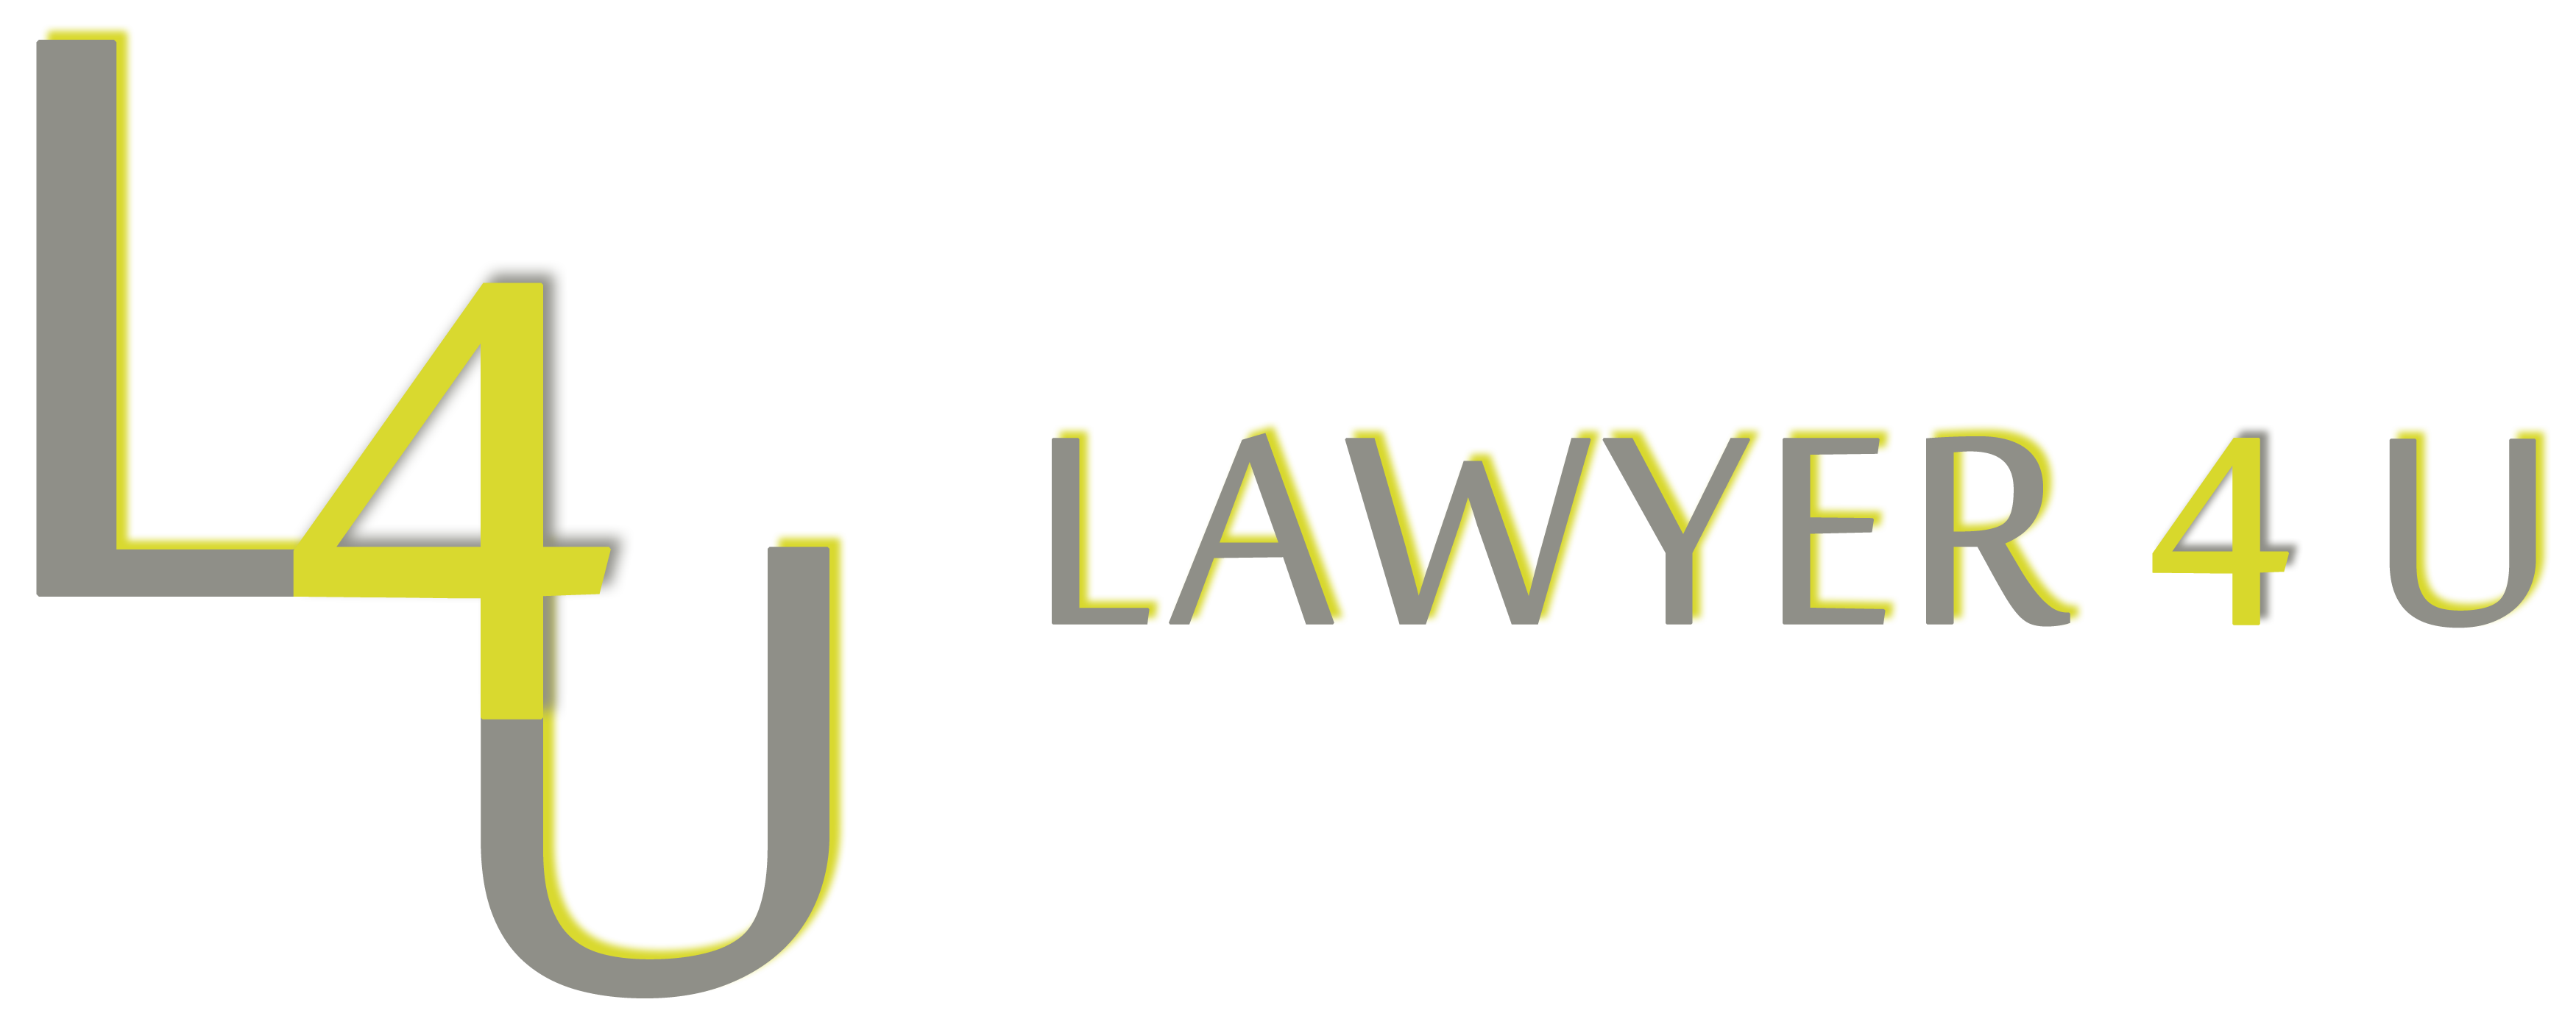 Lawyer 4 U